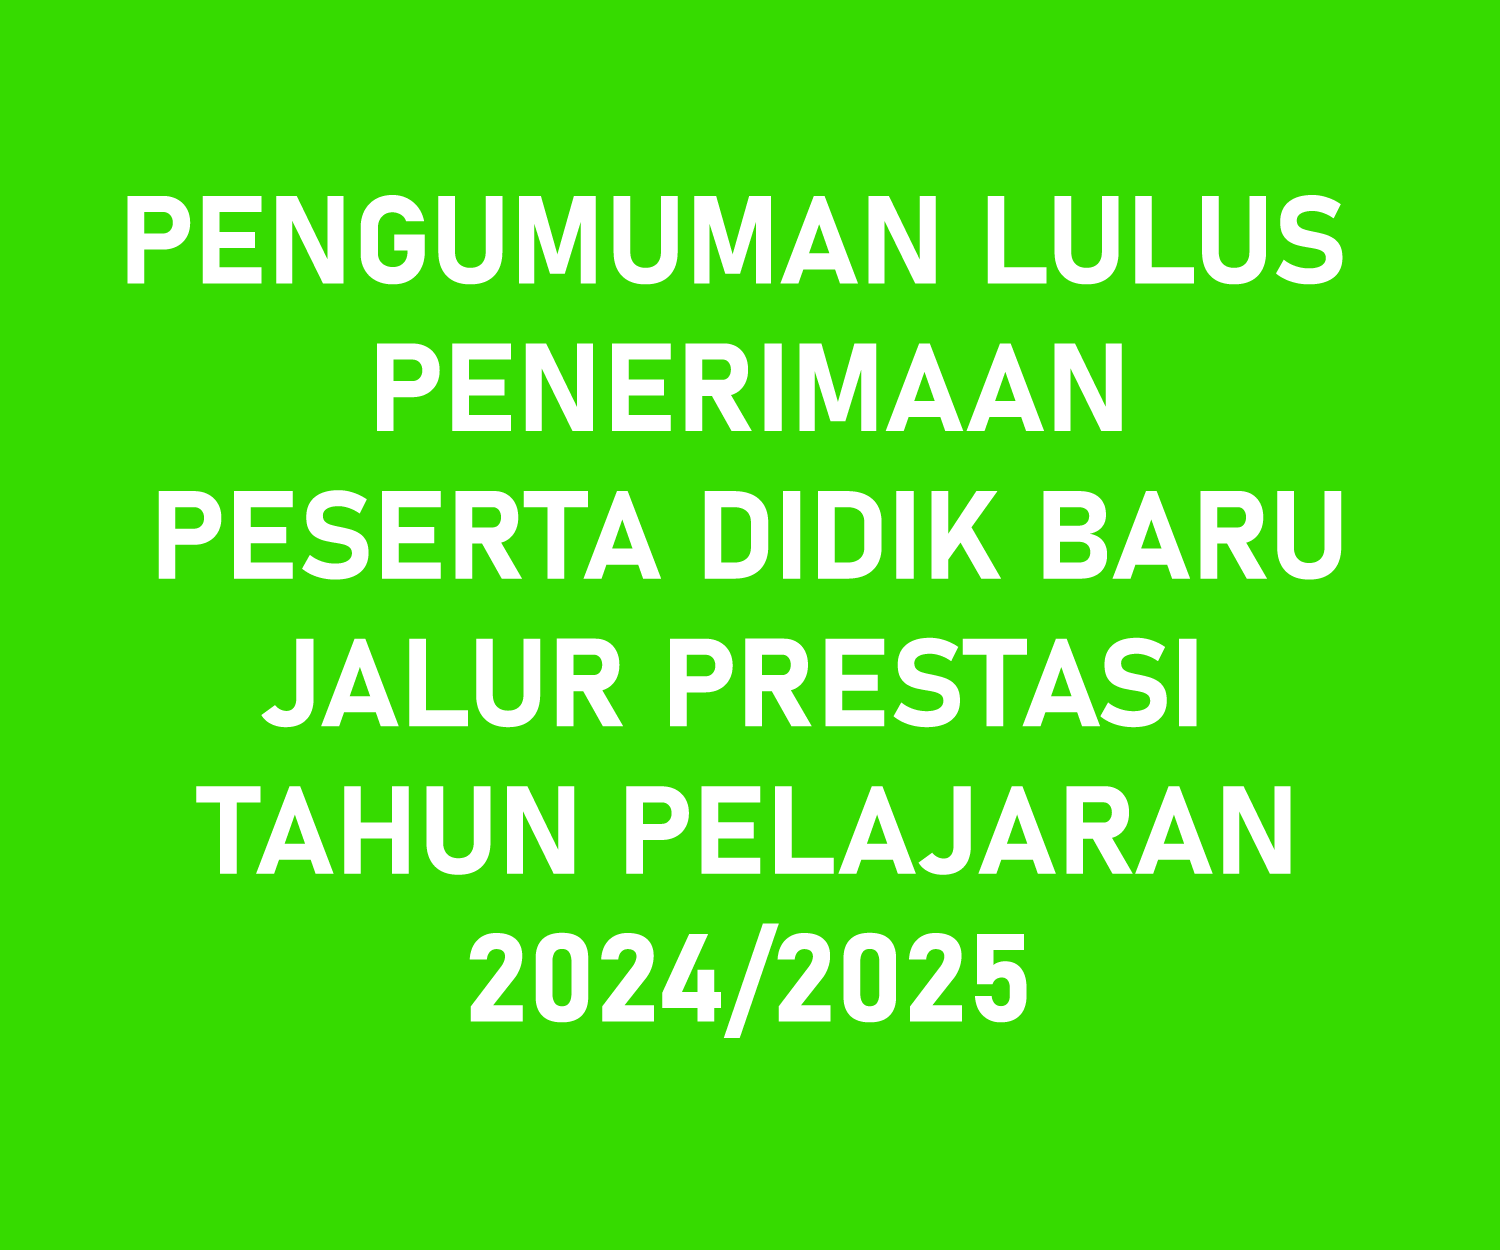 PENGUMUMAN LULUS PENERIMAAN PESERTA DIDIK BARU JALUR PRESTASI TAHUN PELAJARAN 2024/2025